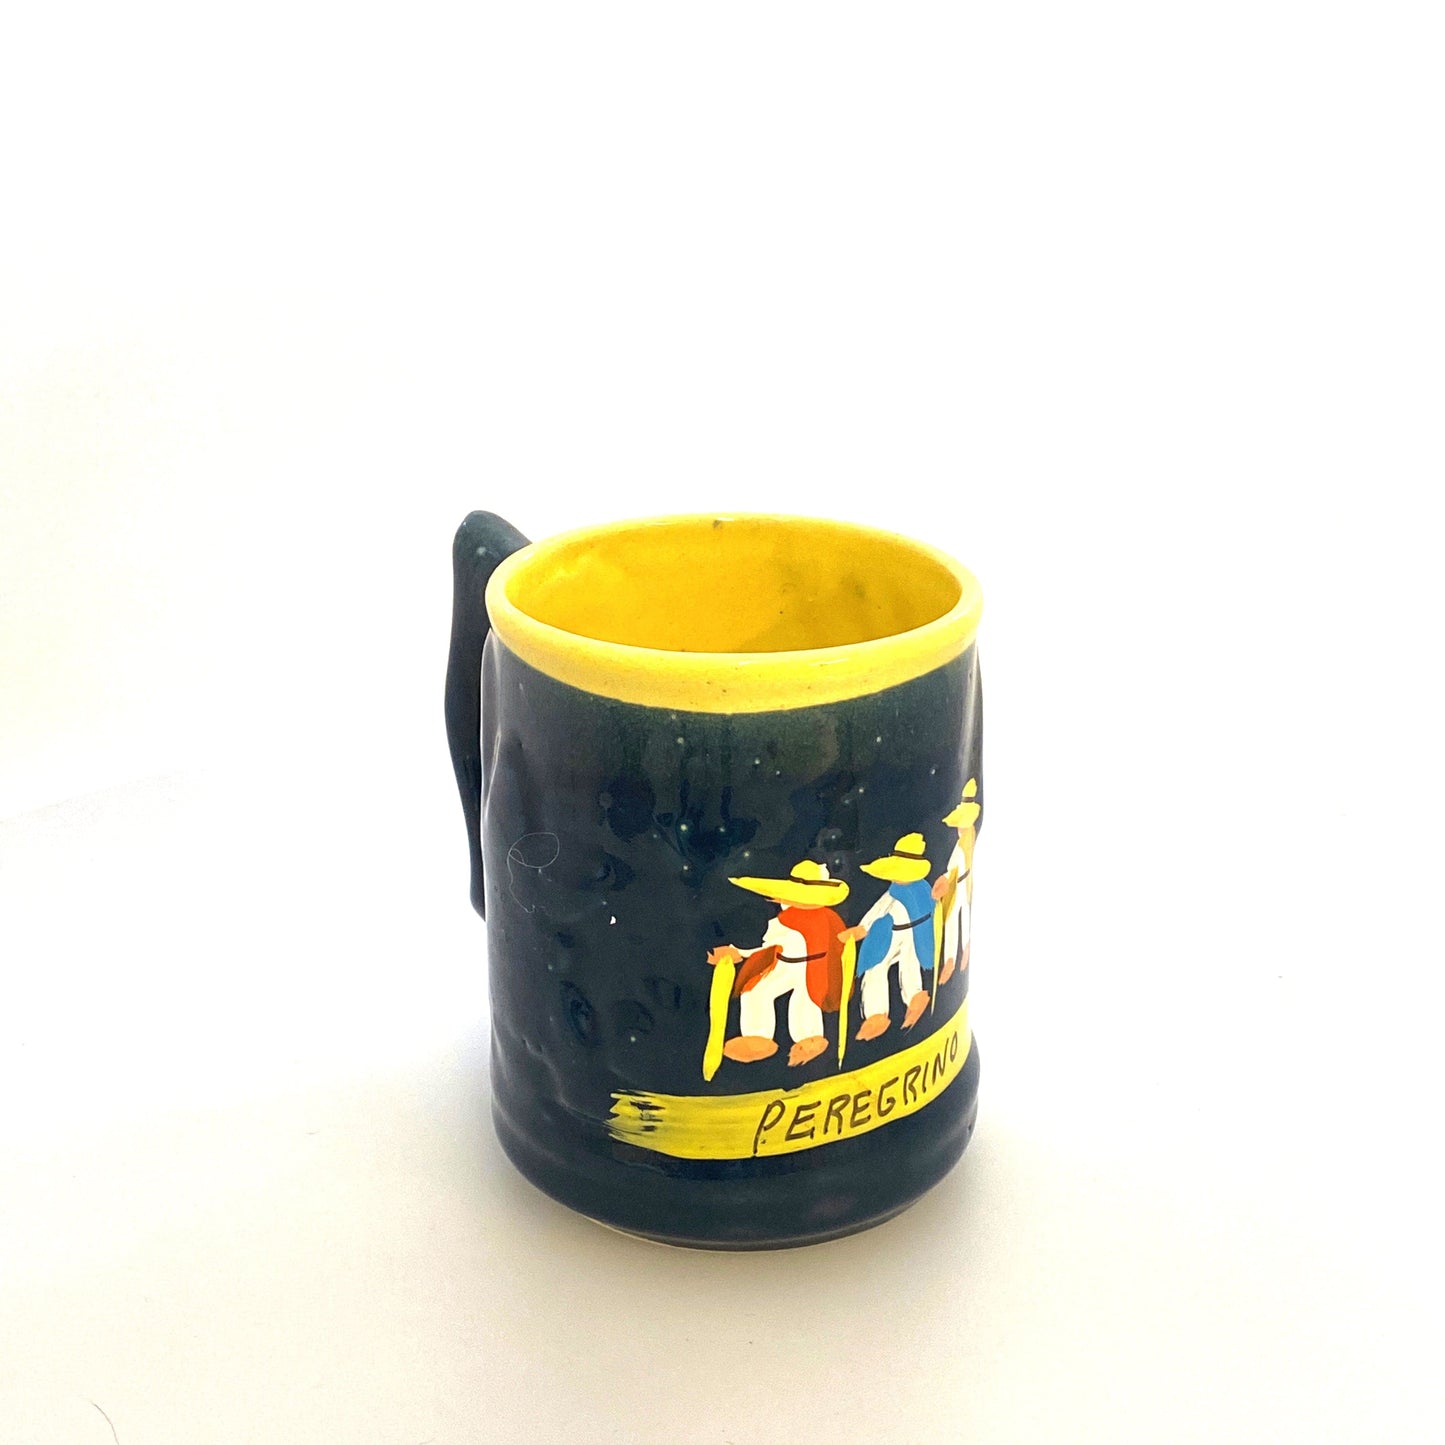 Handmade Tourism Souvenir “Peregrino” Coffee Cup, 12 Oz.